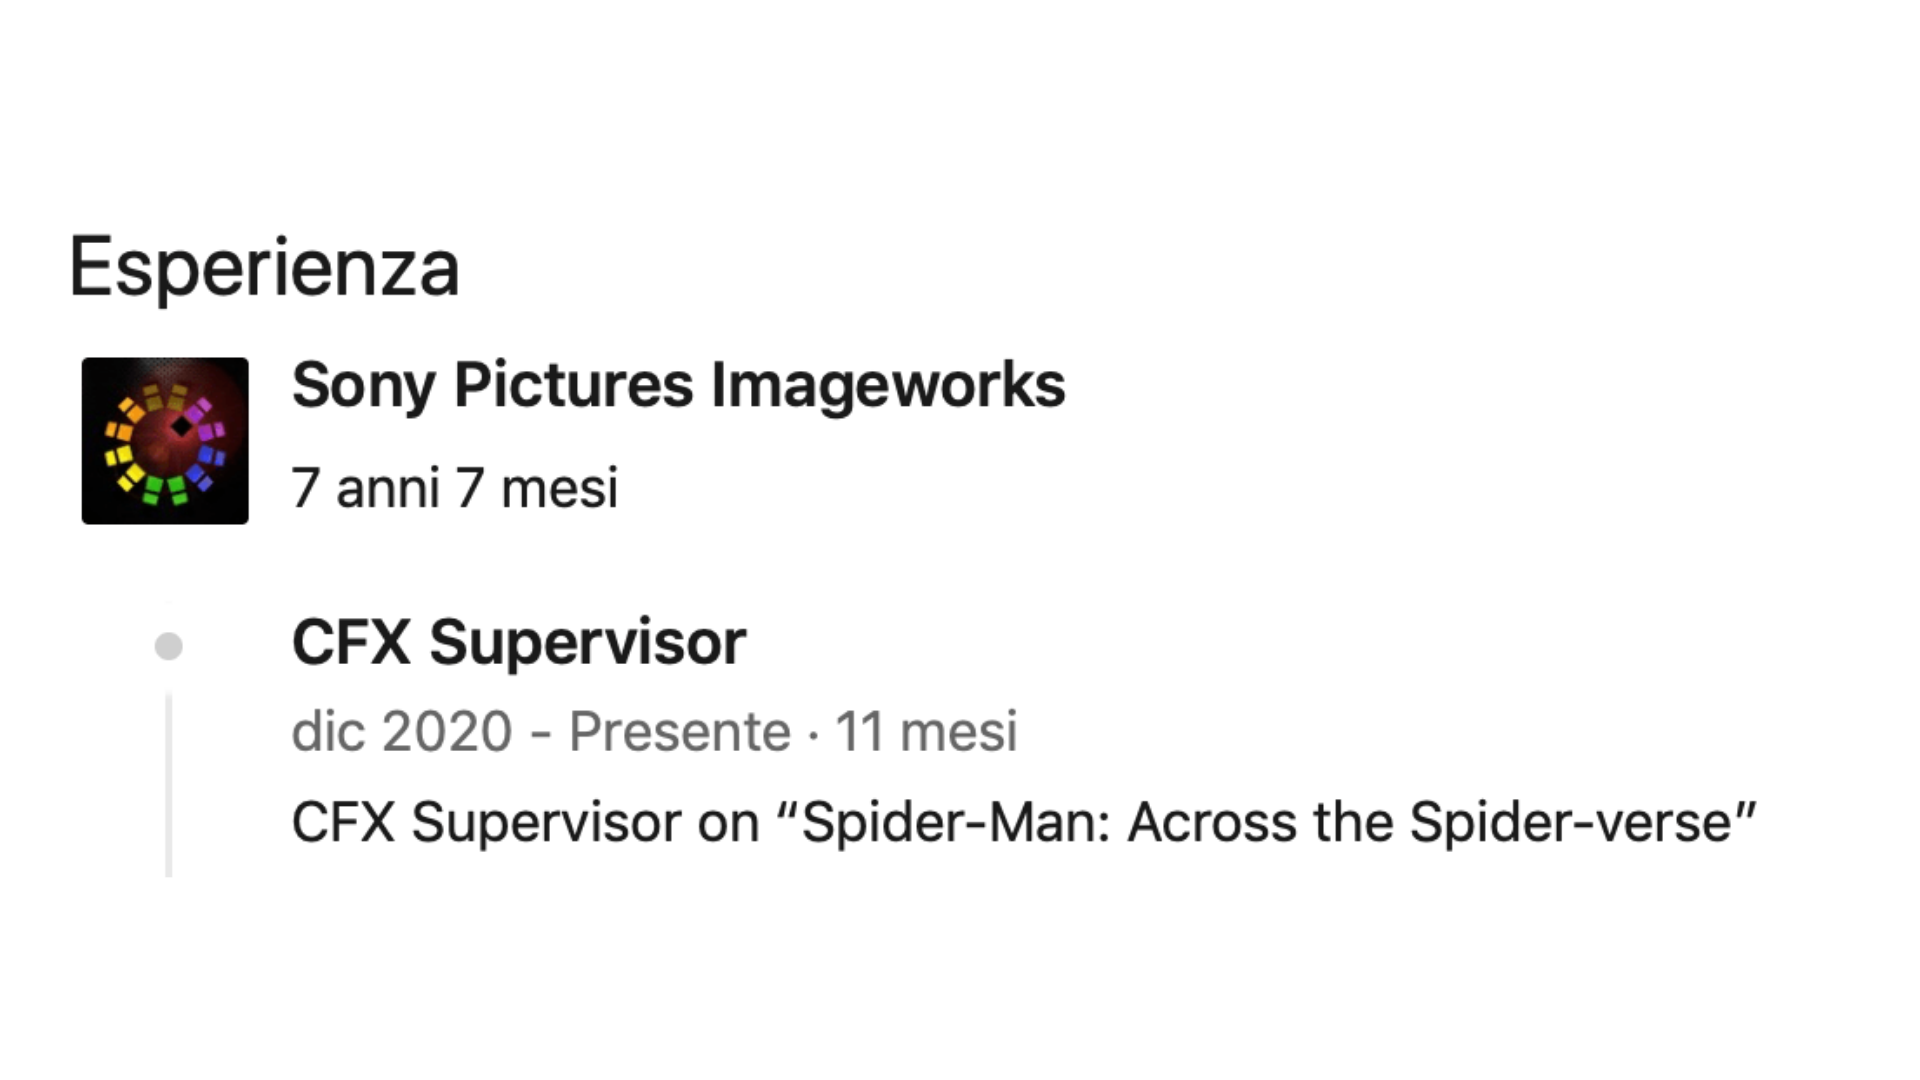 L'aggiornamento LinkedIn "incriminato" di Spider-Man Across the Spider-Verse